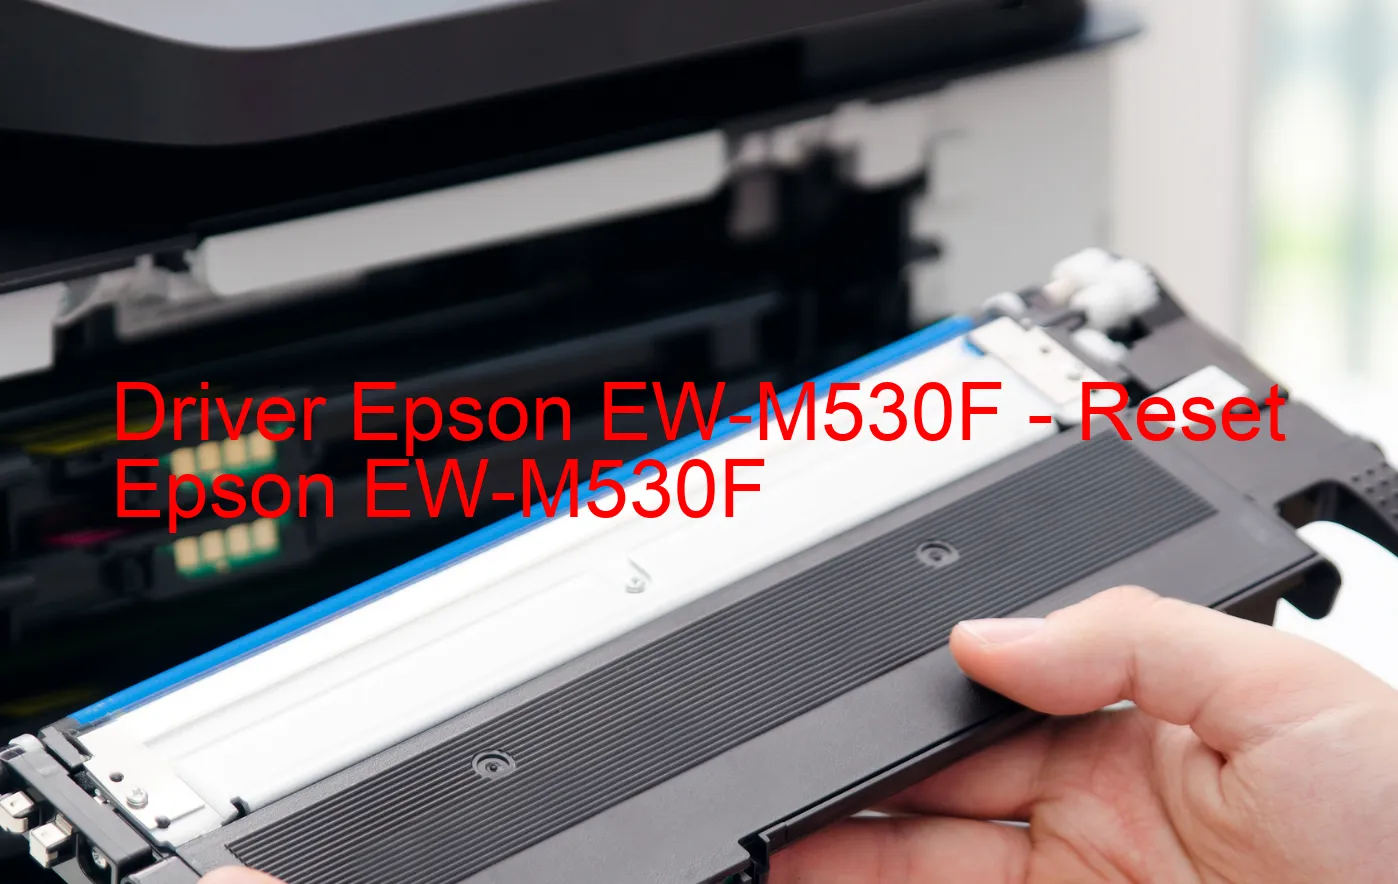 Epson EW-M530Fのドライバー、Epson EW-M530Fのリセットソフトウェア